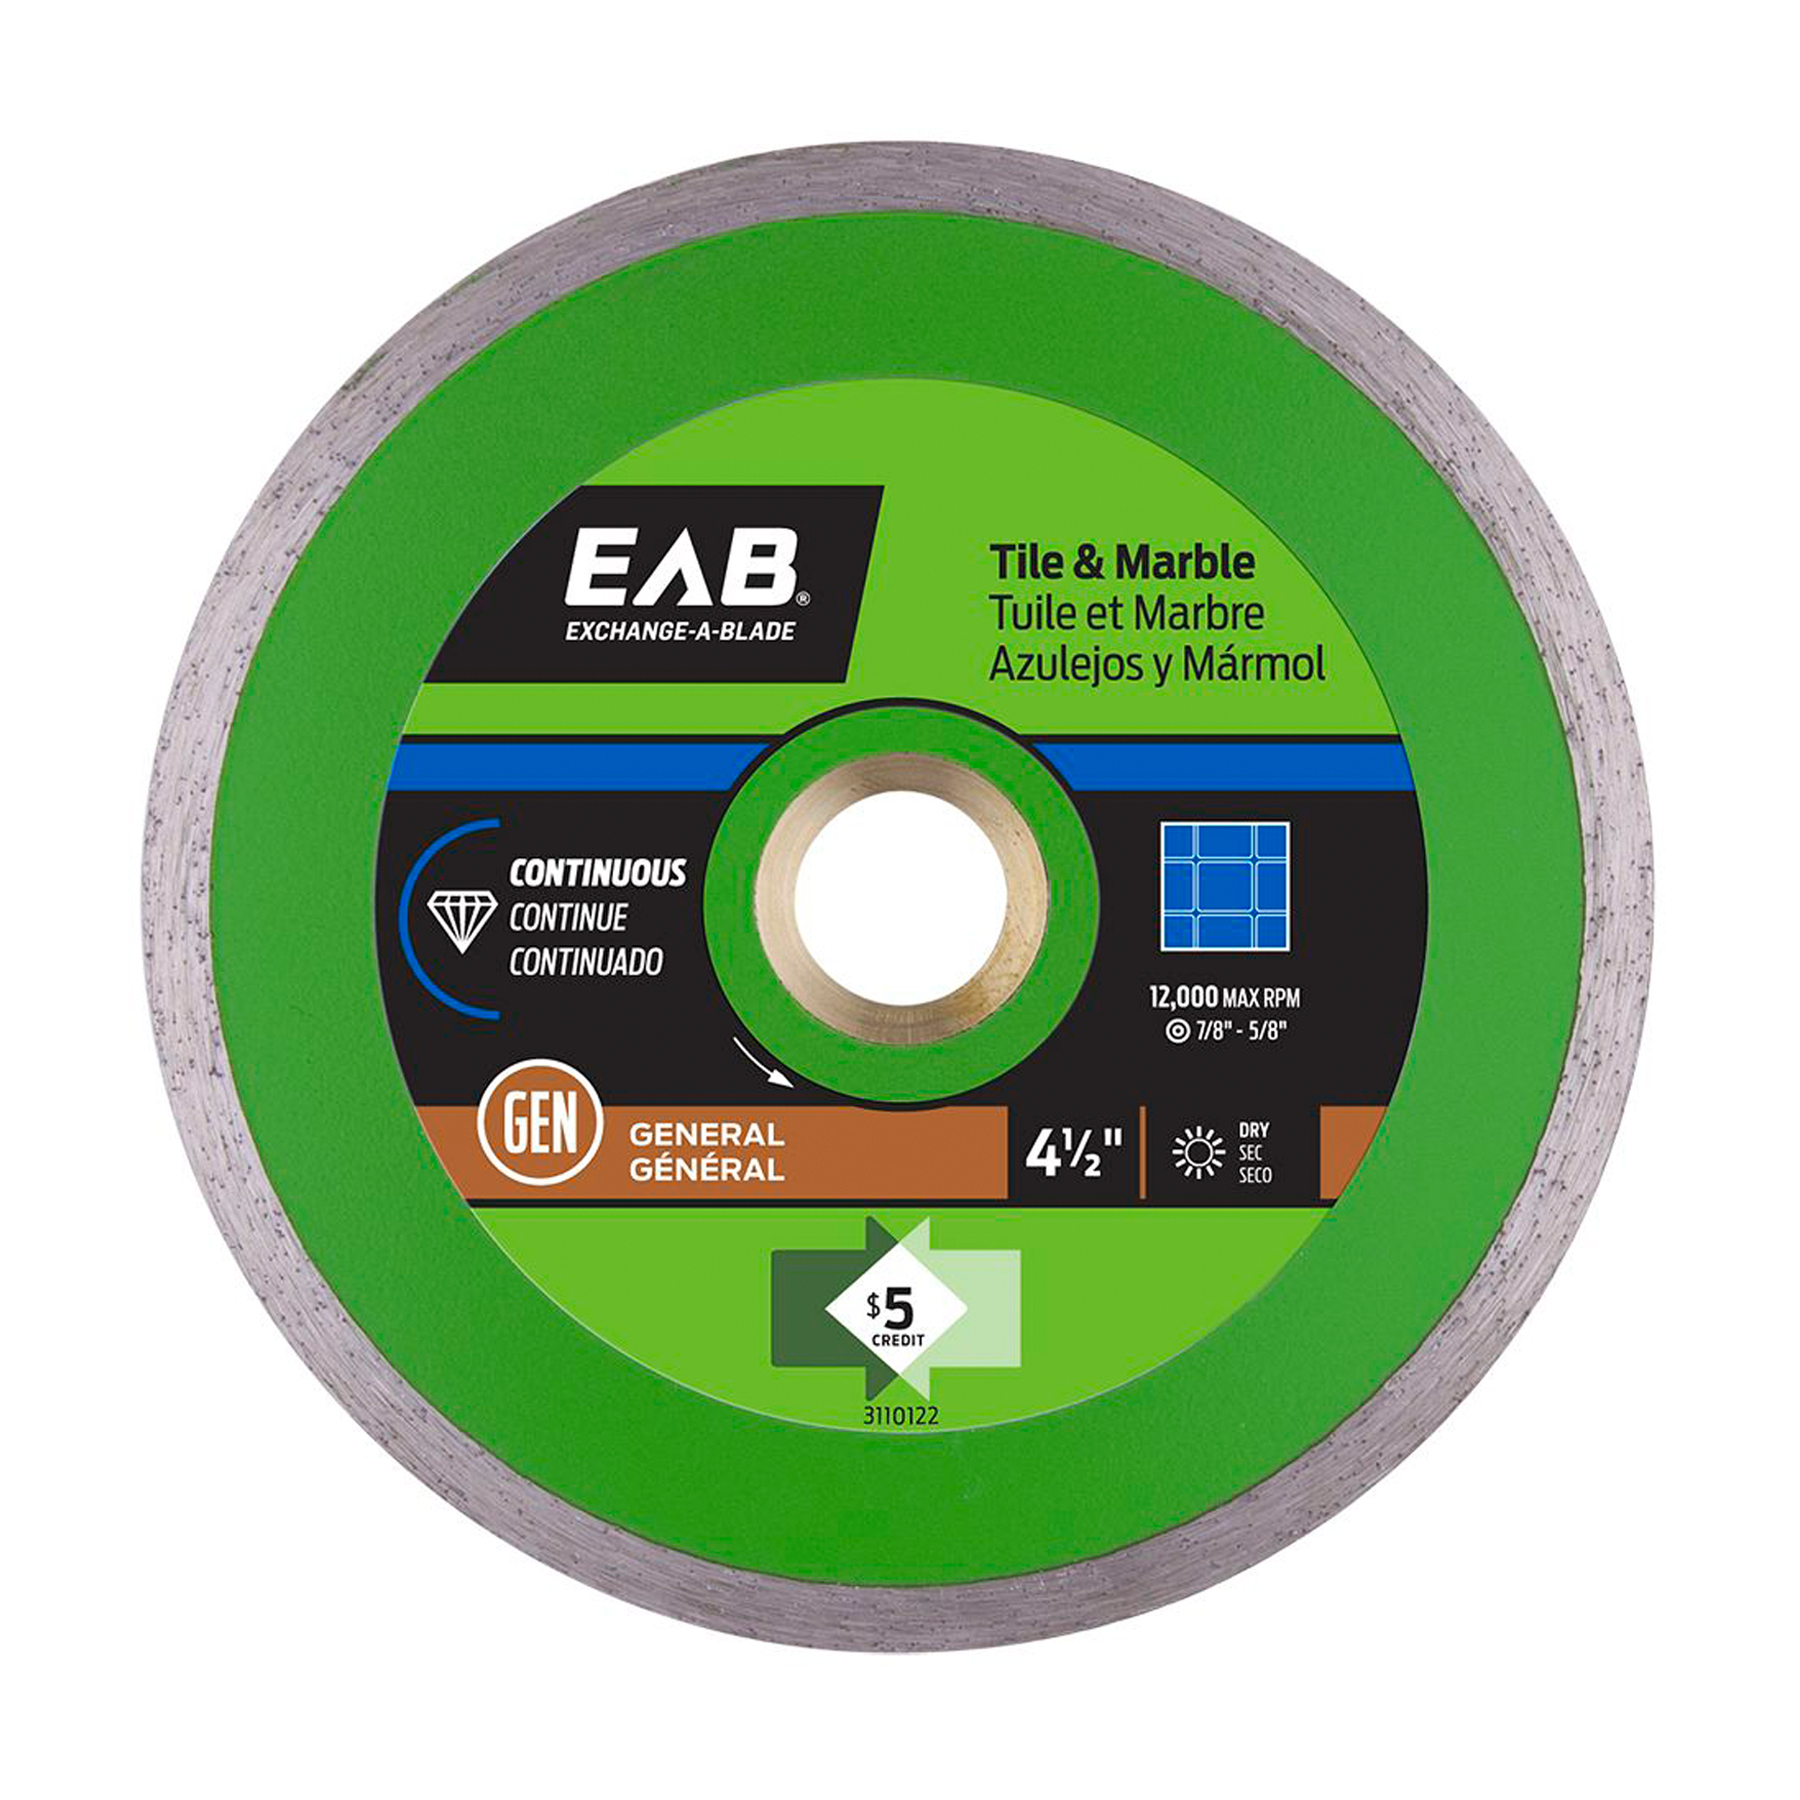 EAB (3110122) product